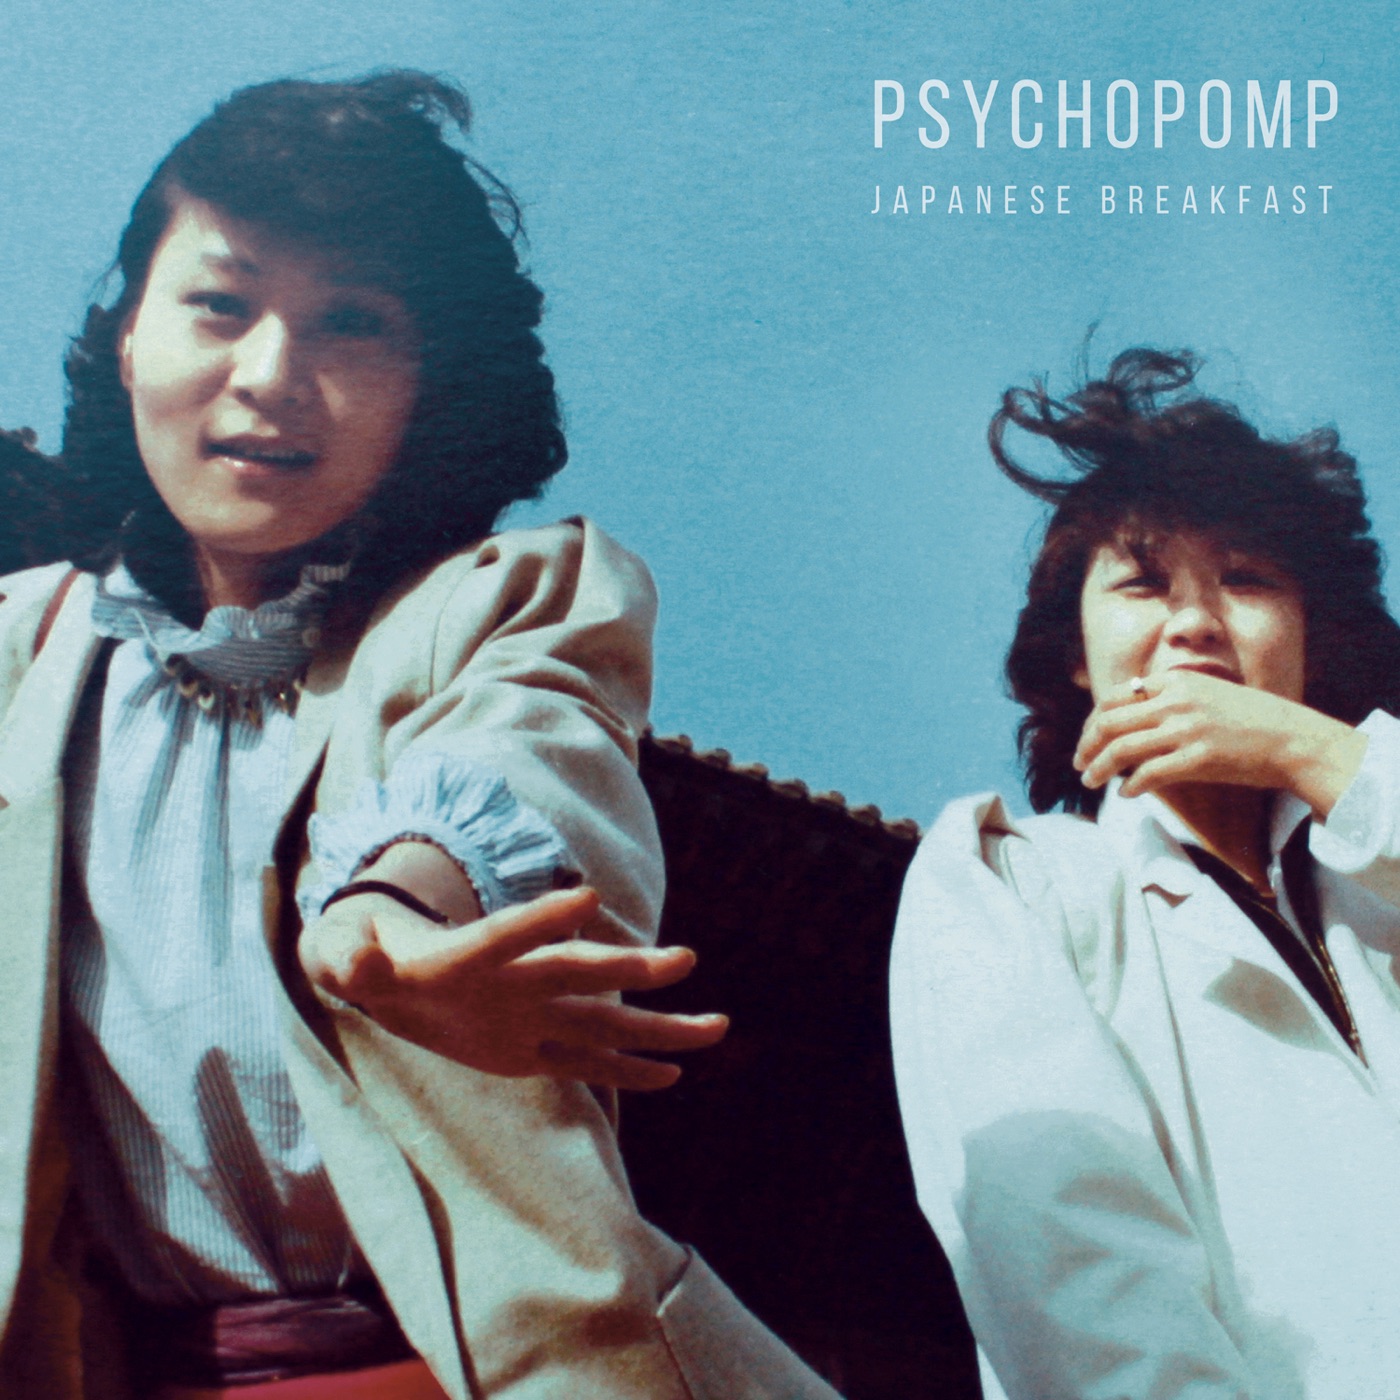 Psychopomp by Japanese Breakfast